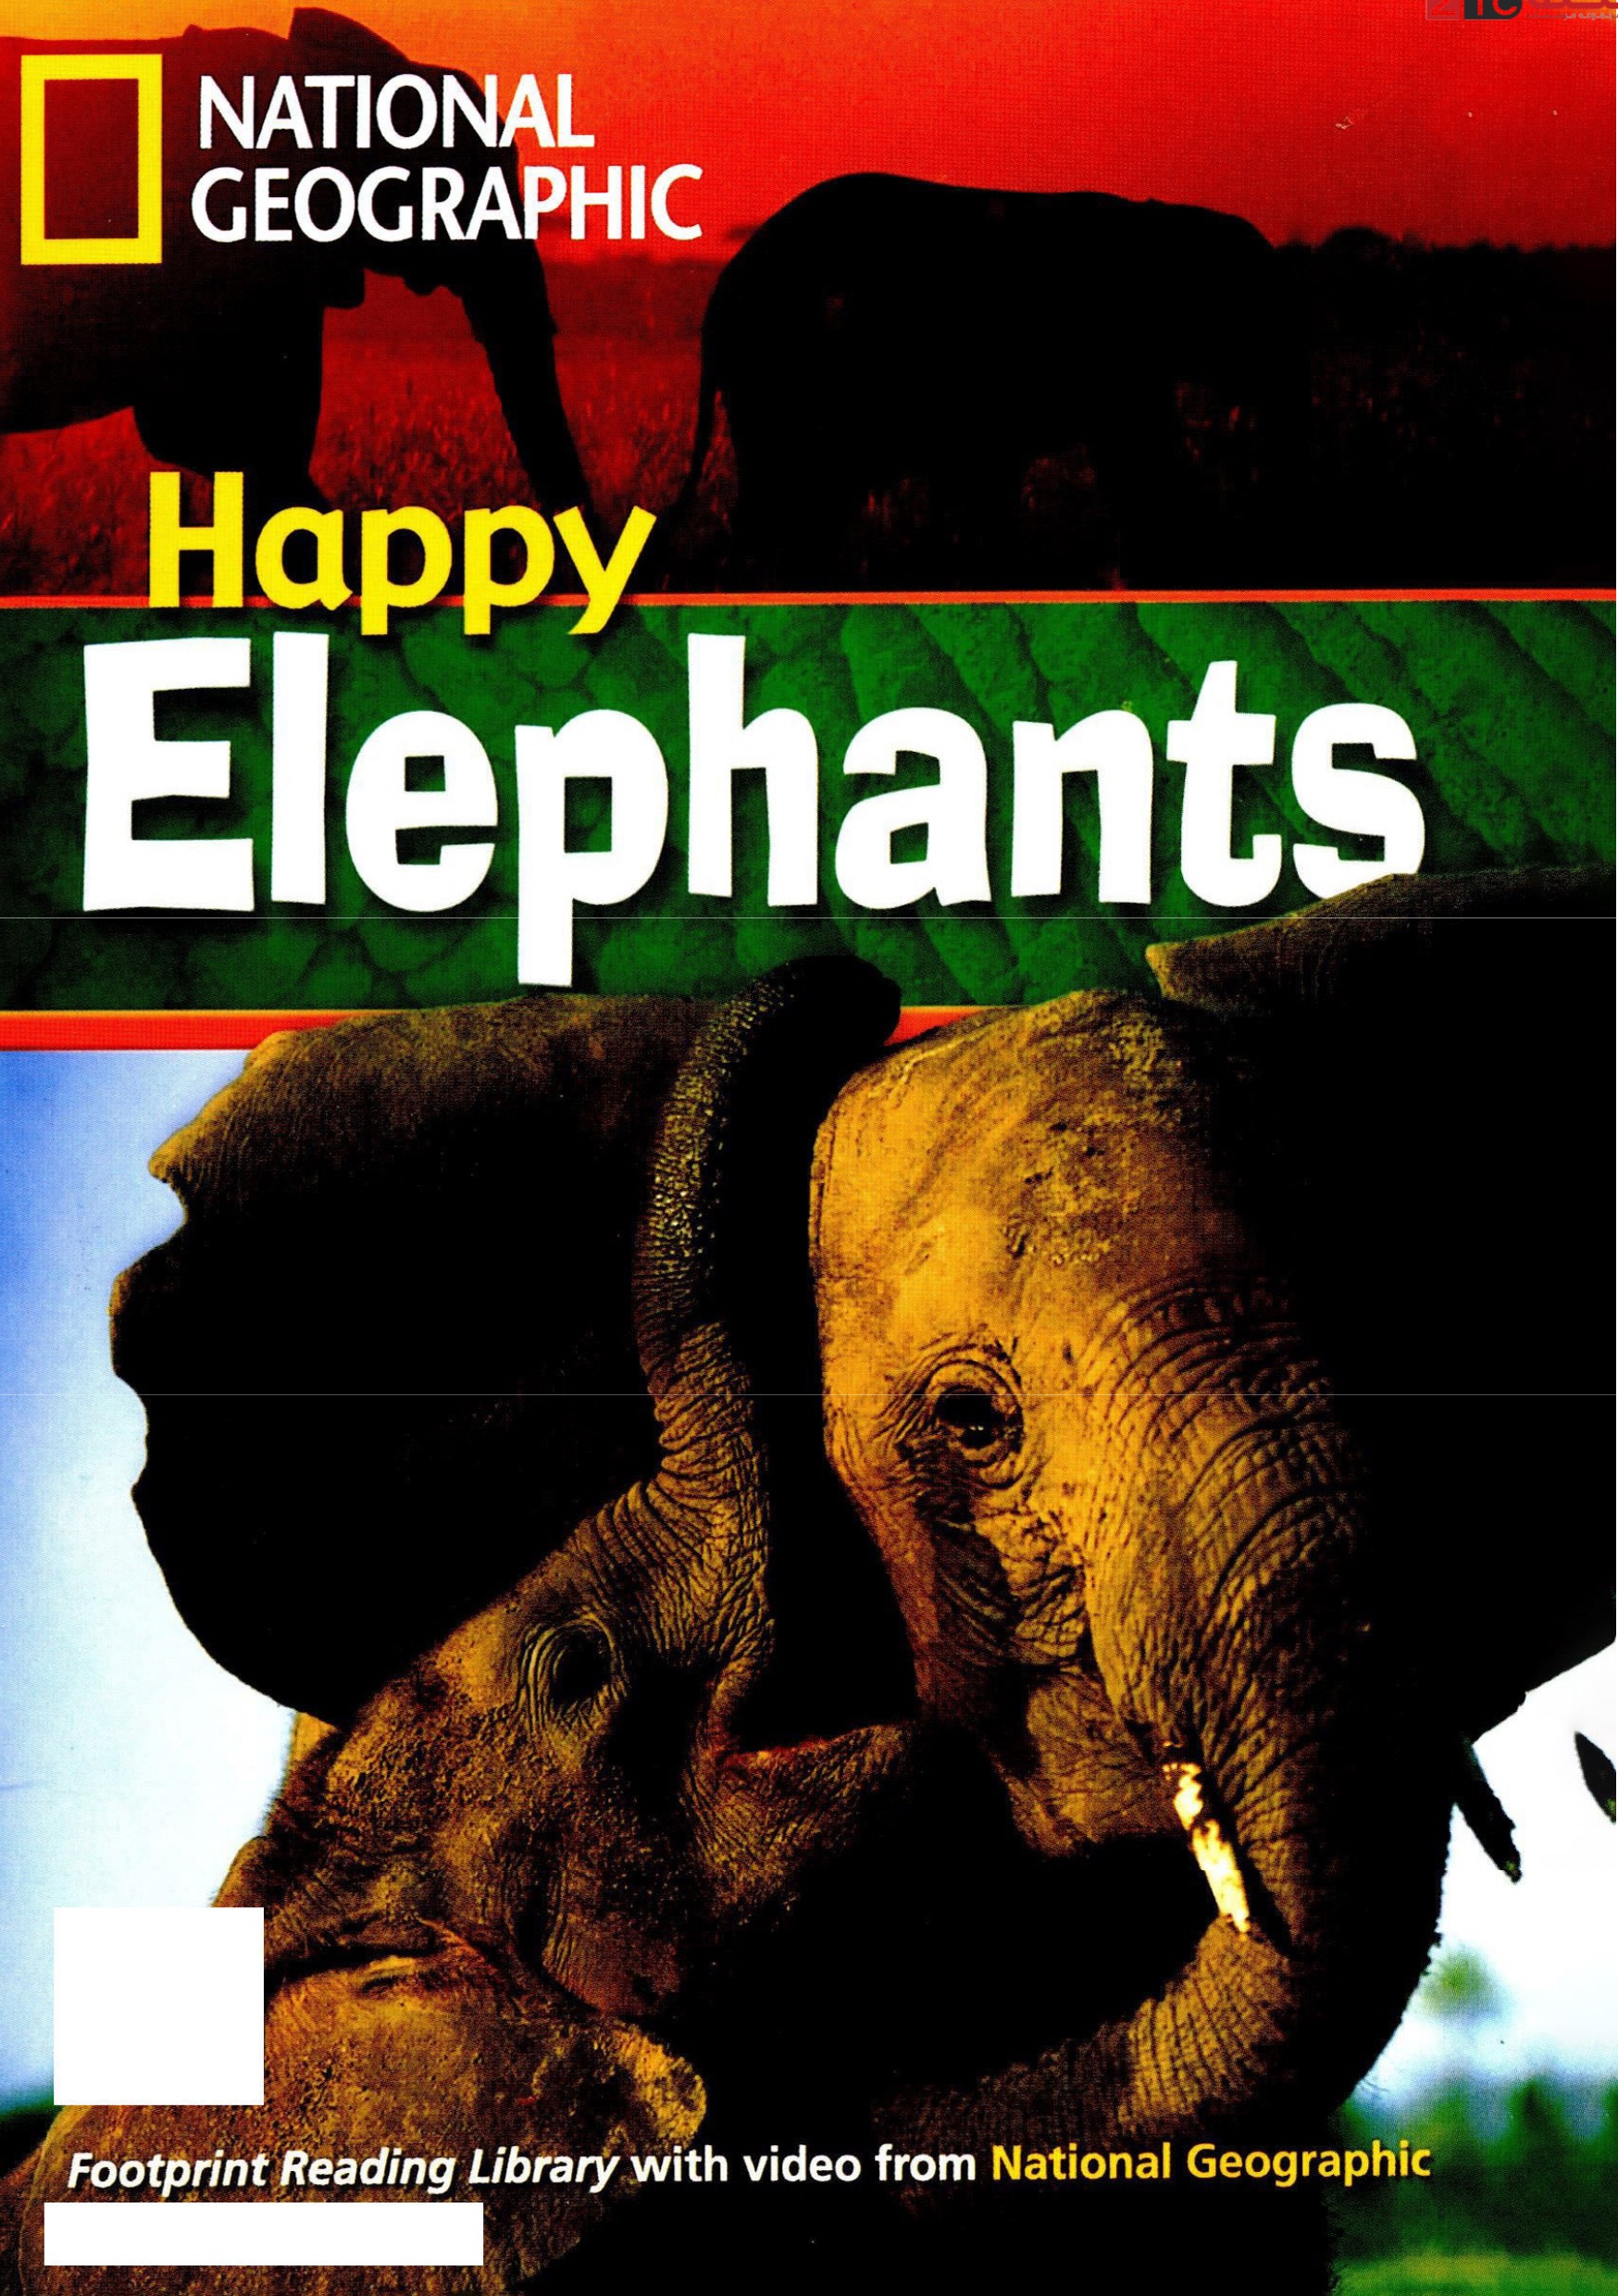 Happy Elephants